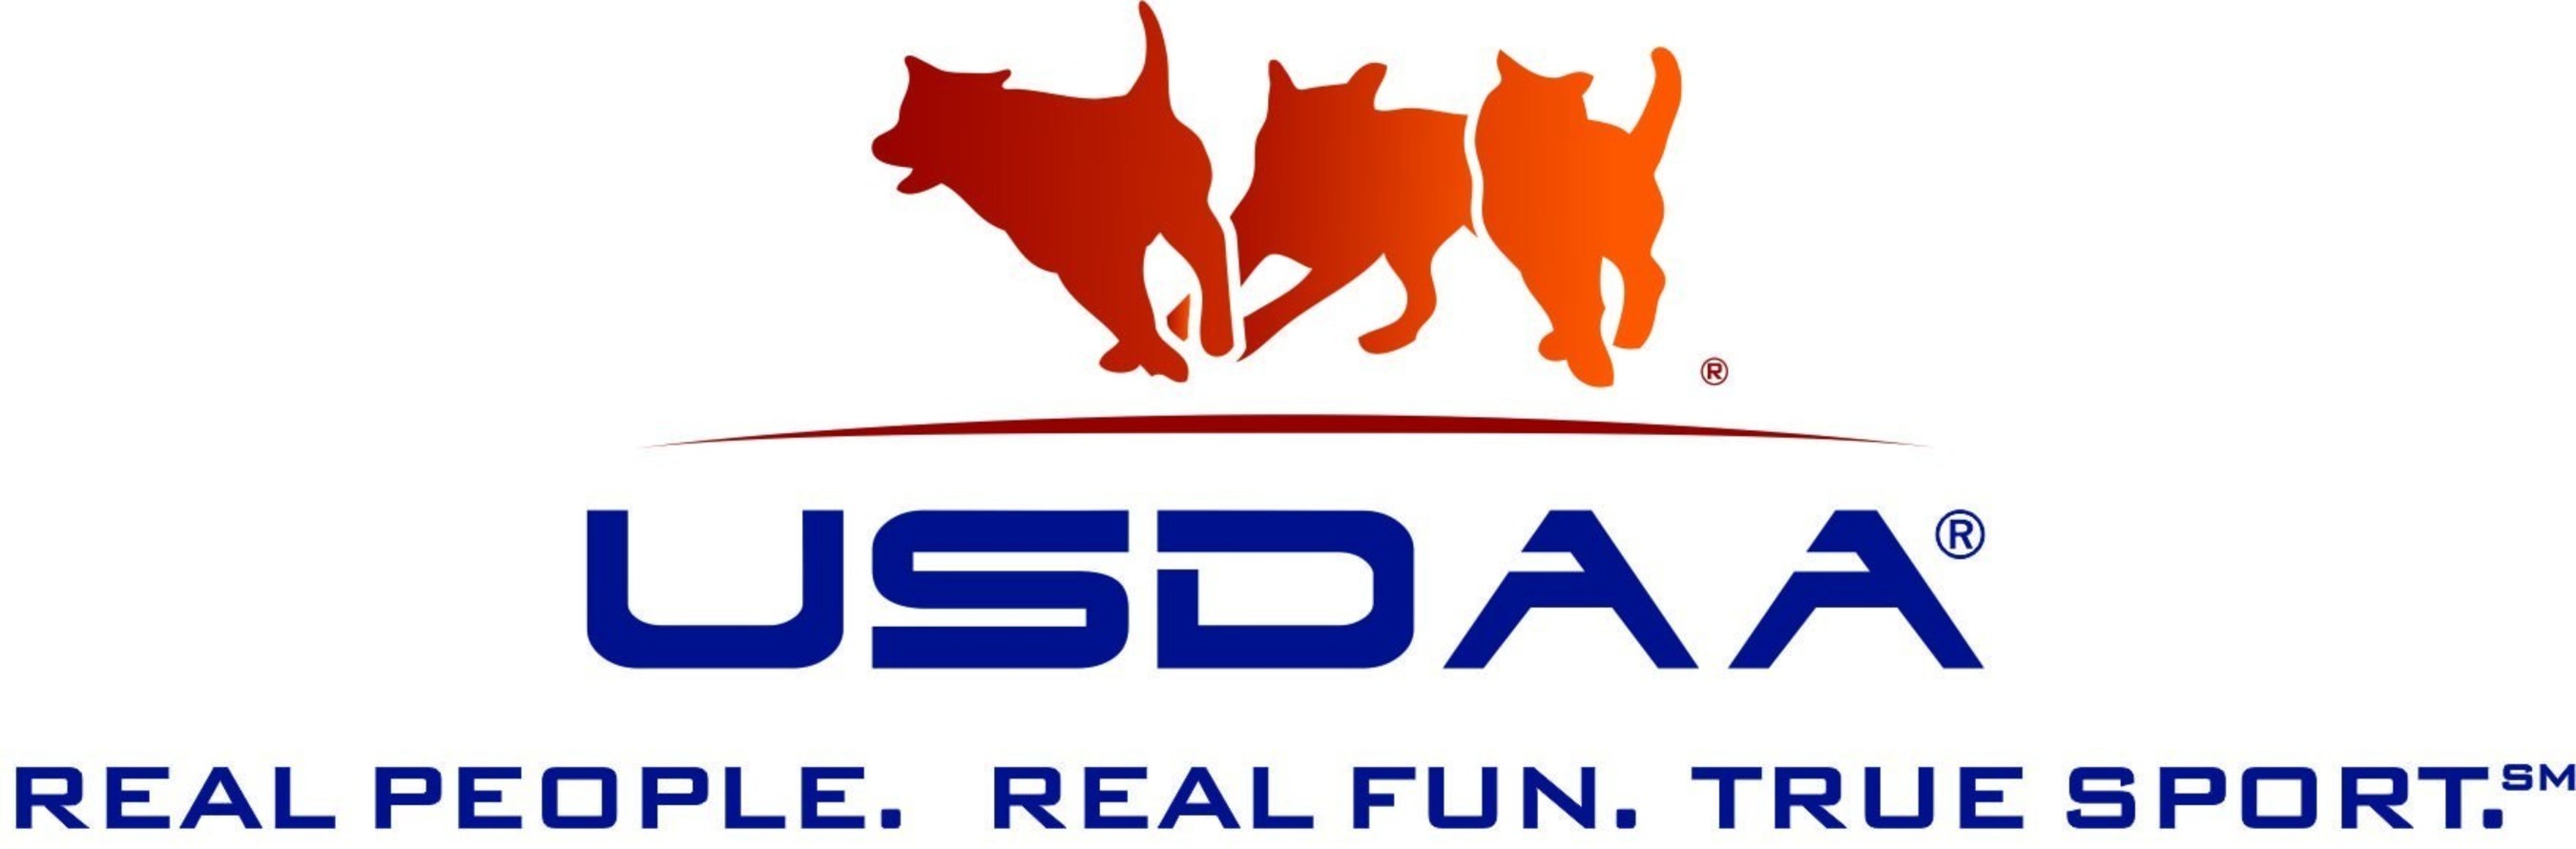 USDAA logo